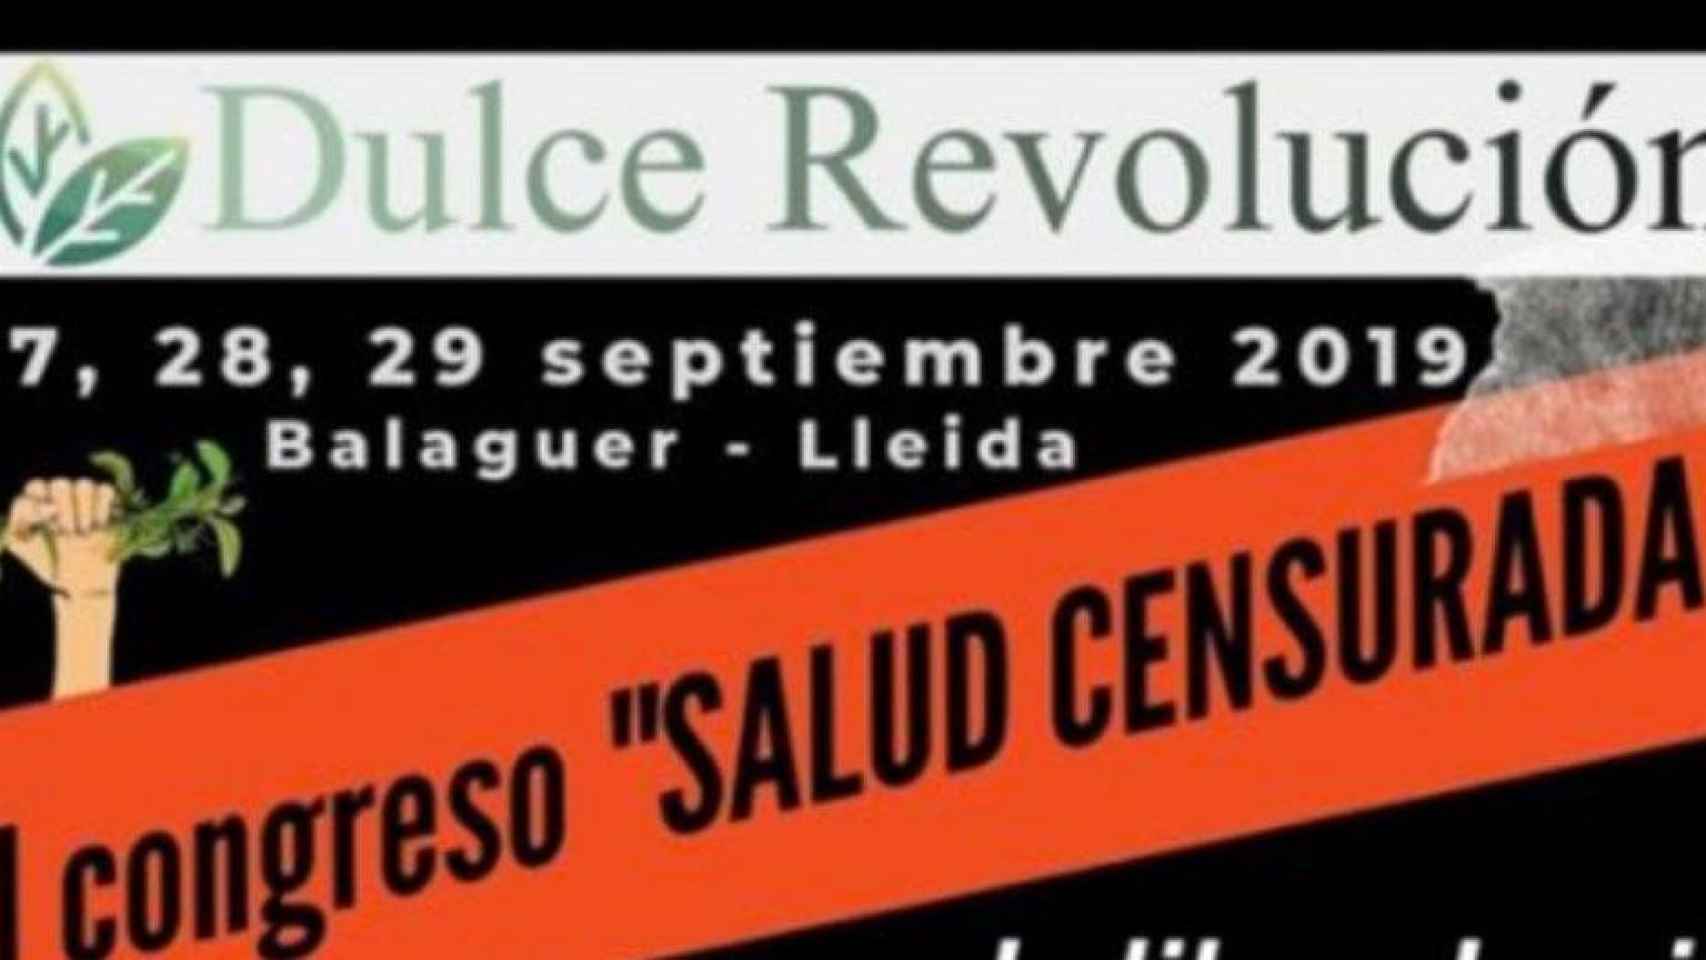 Cartel del congreso pseudocientífico y antivacunas de Josep Pàmies en Lleida / TWITTER